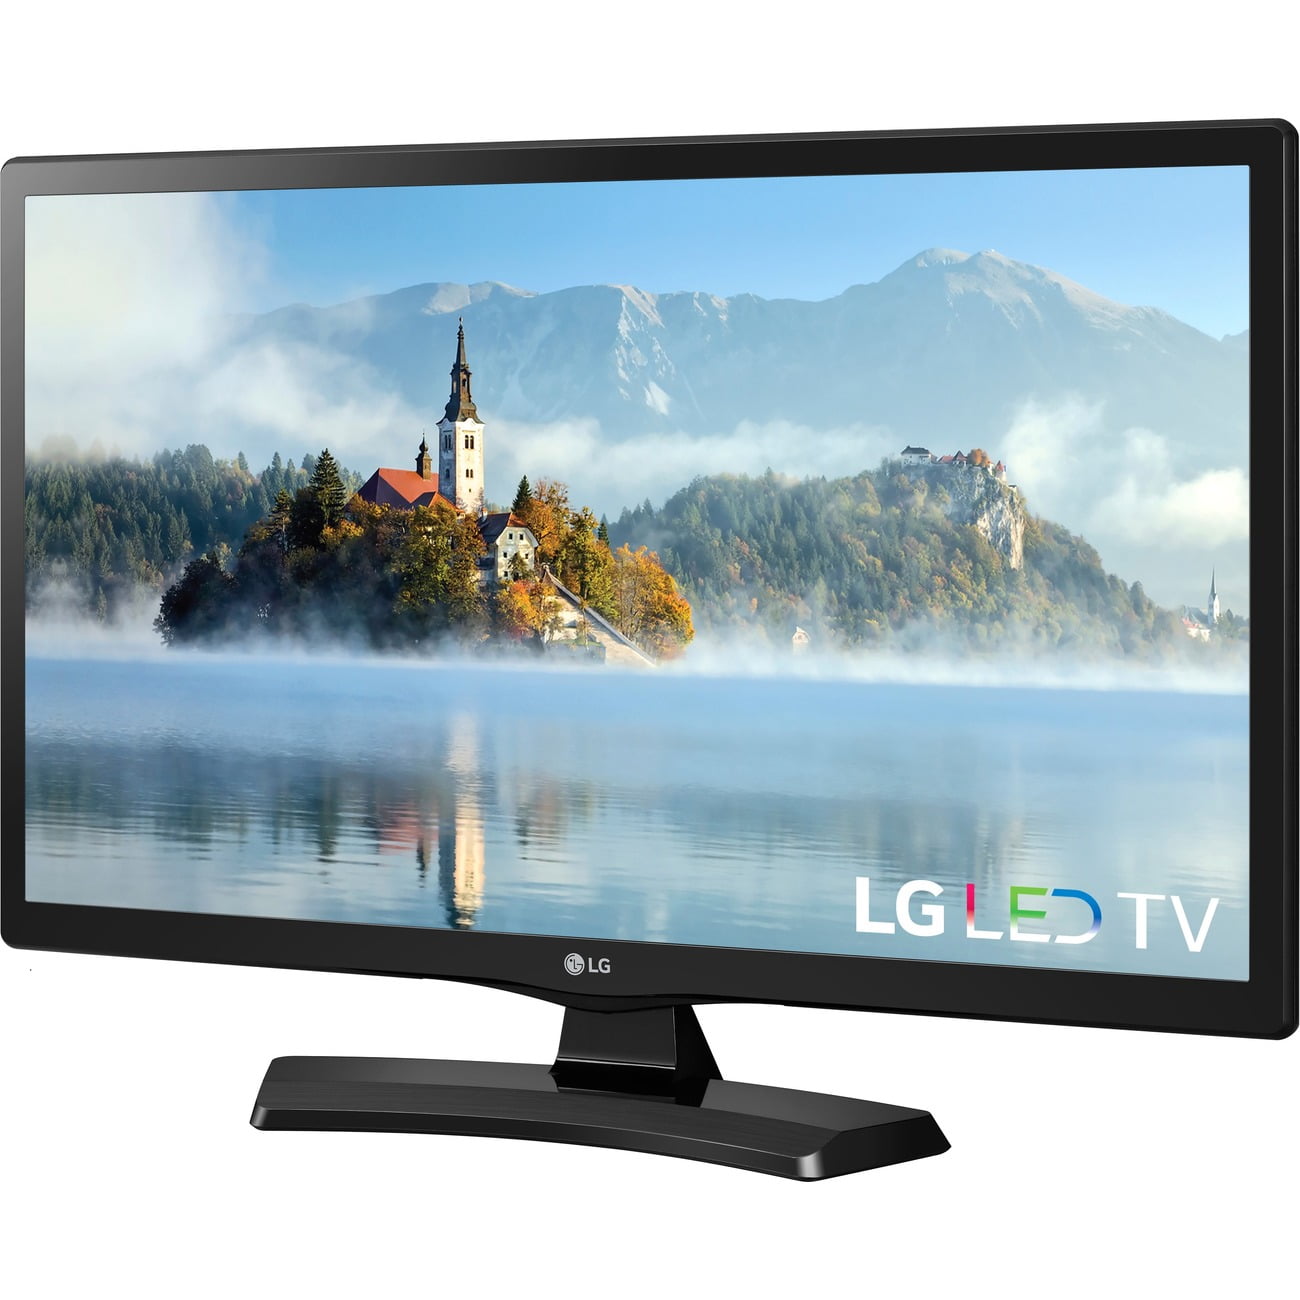 Lg Electronics 24lj4540 24 Inch Class Hd 720p Led Tv Walmart Com